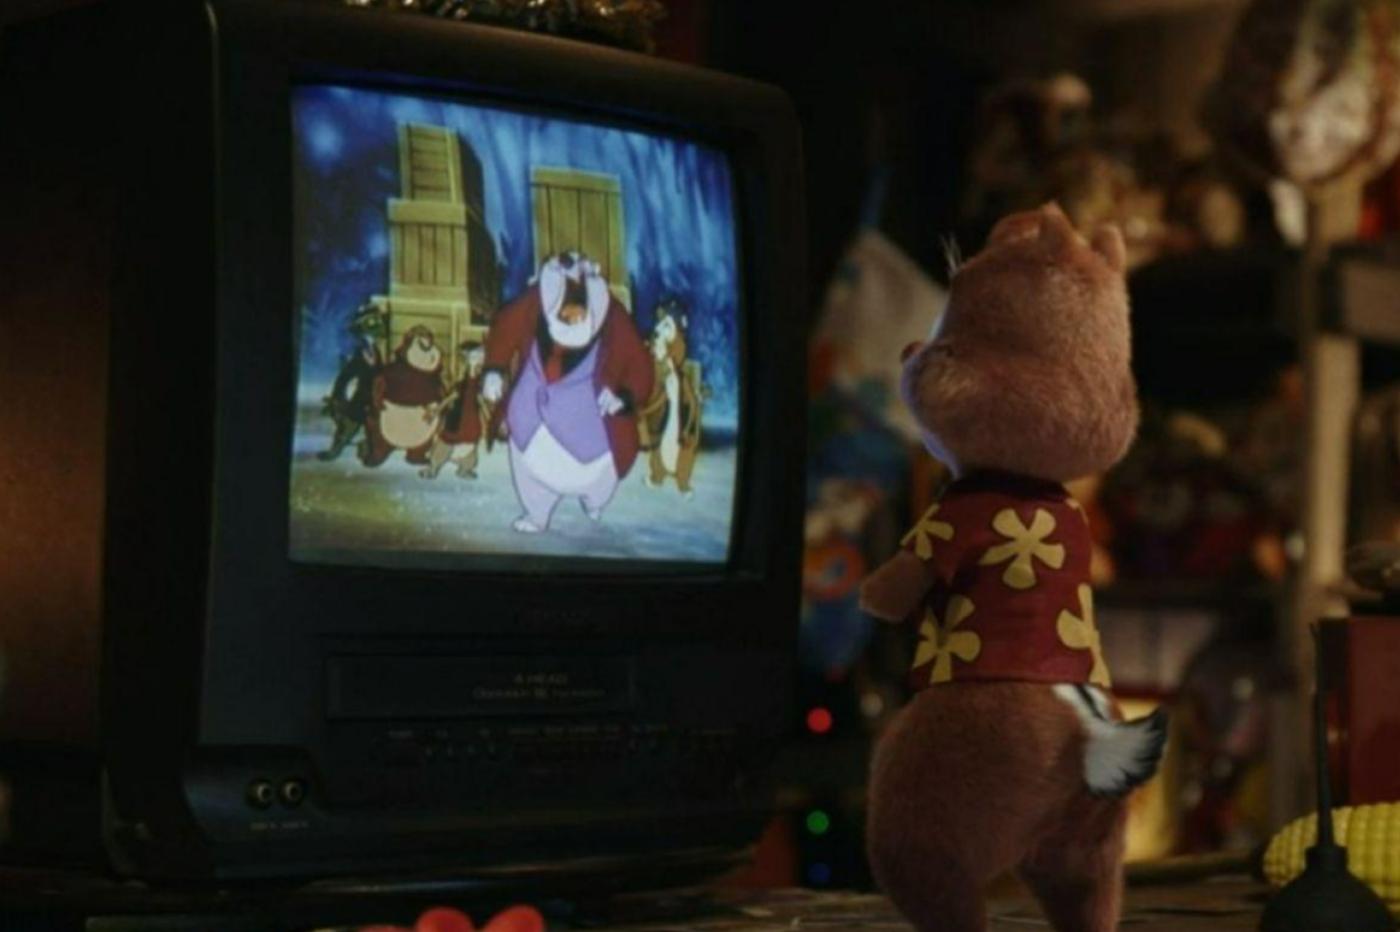 Capture d'écran du film avec Tac regardant son émission dont il est la vedette sur une vieille télé cathodique